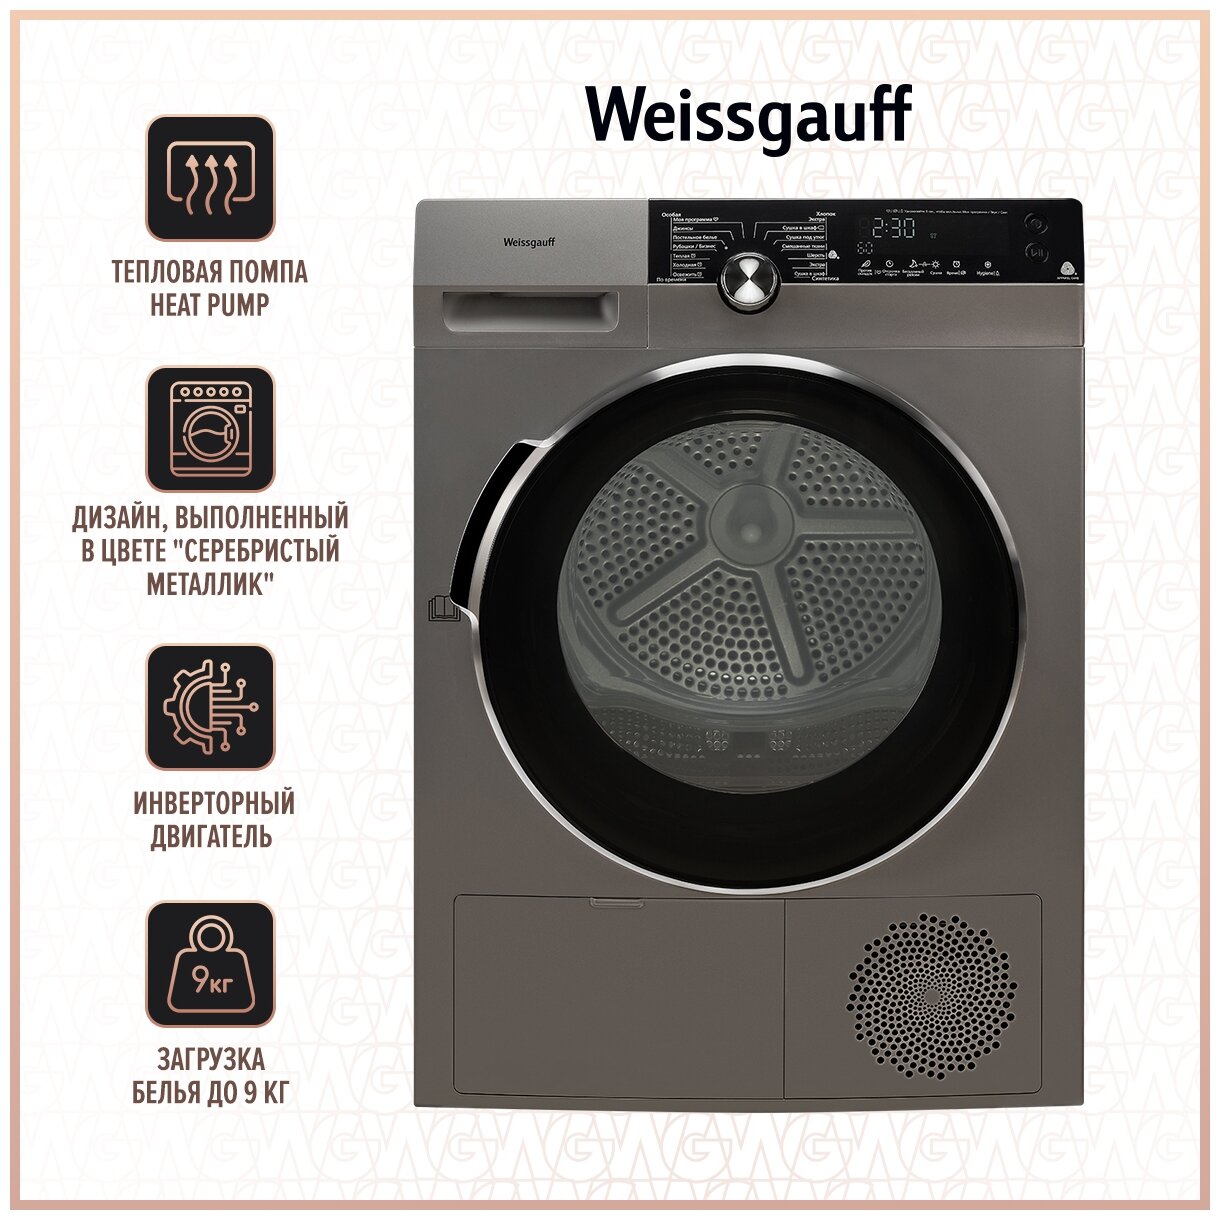 Сушильная машина Weissgauff WD 599 DC Inverter Heat Pump Silver — купить в интернет-магазине по низкой цене на Яндекс Маркете